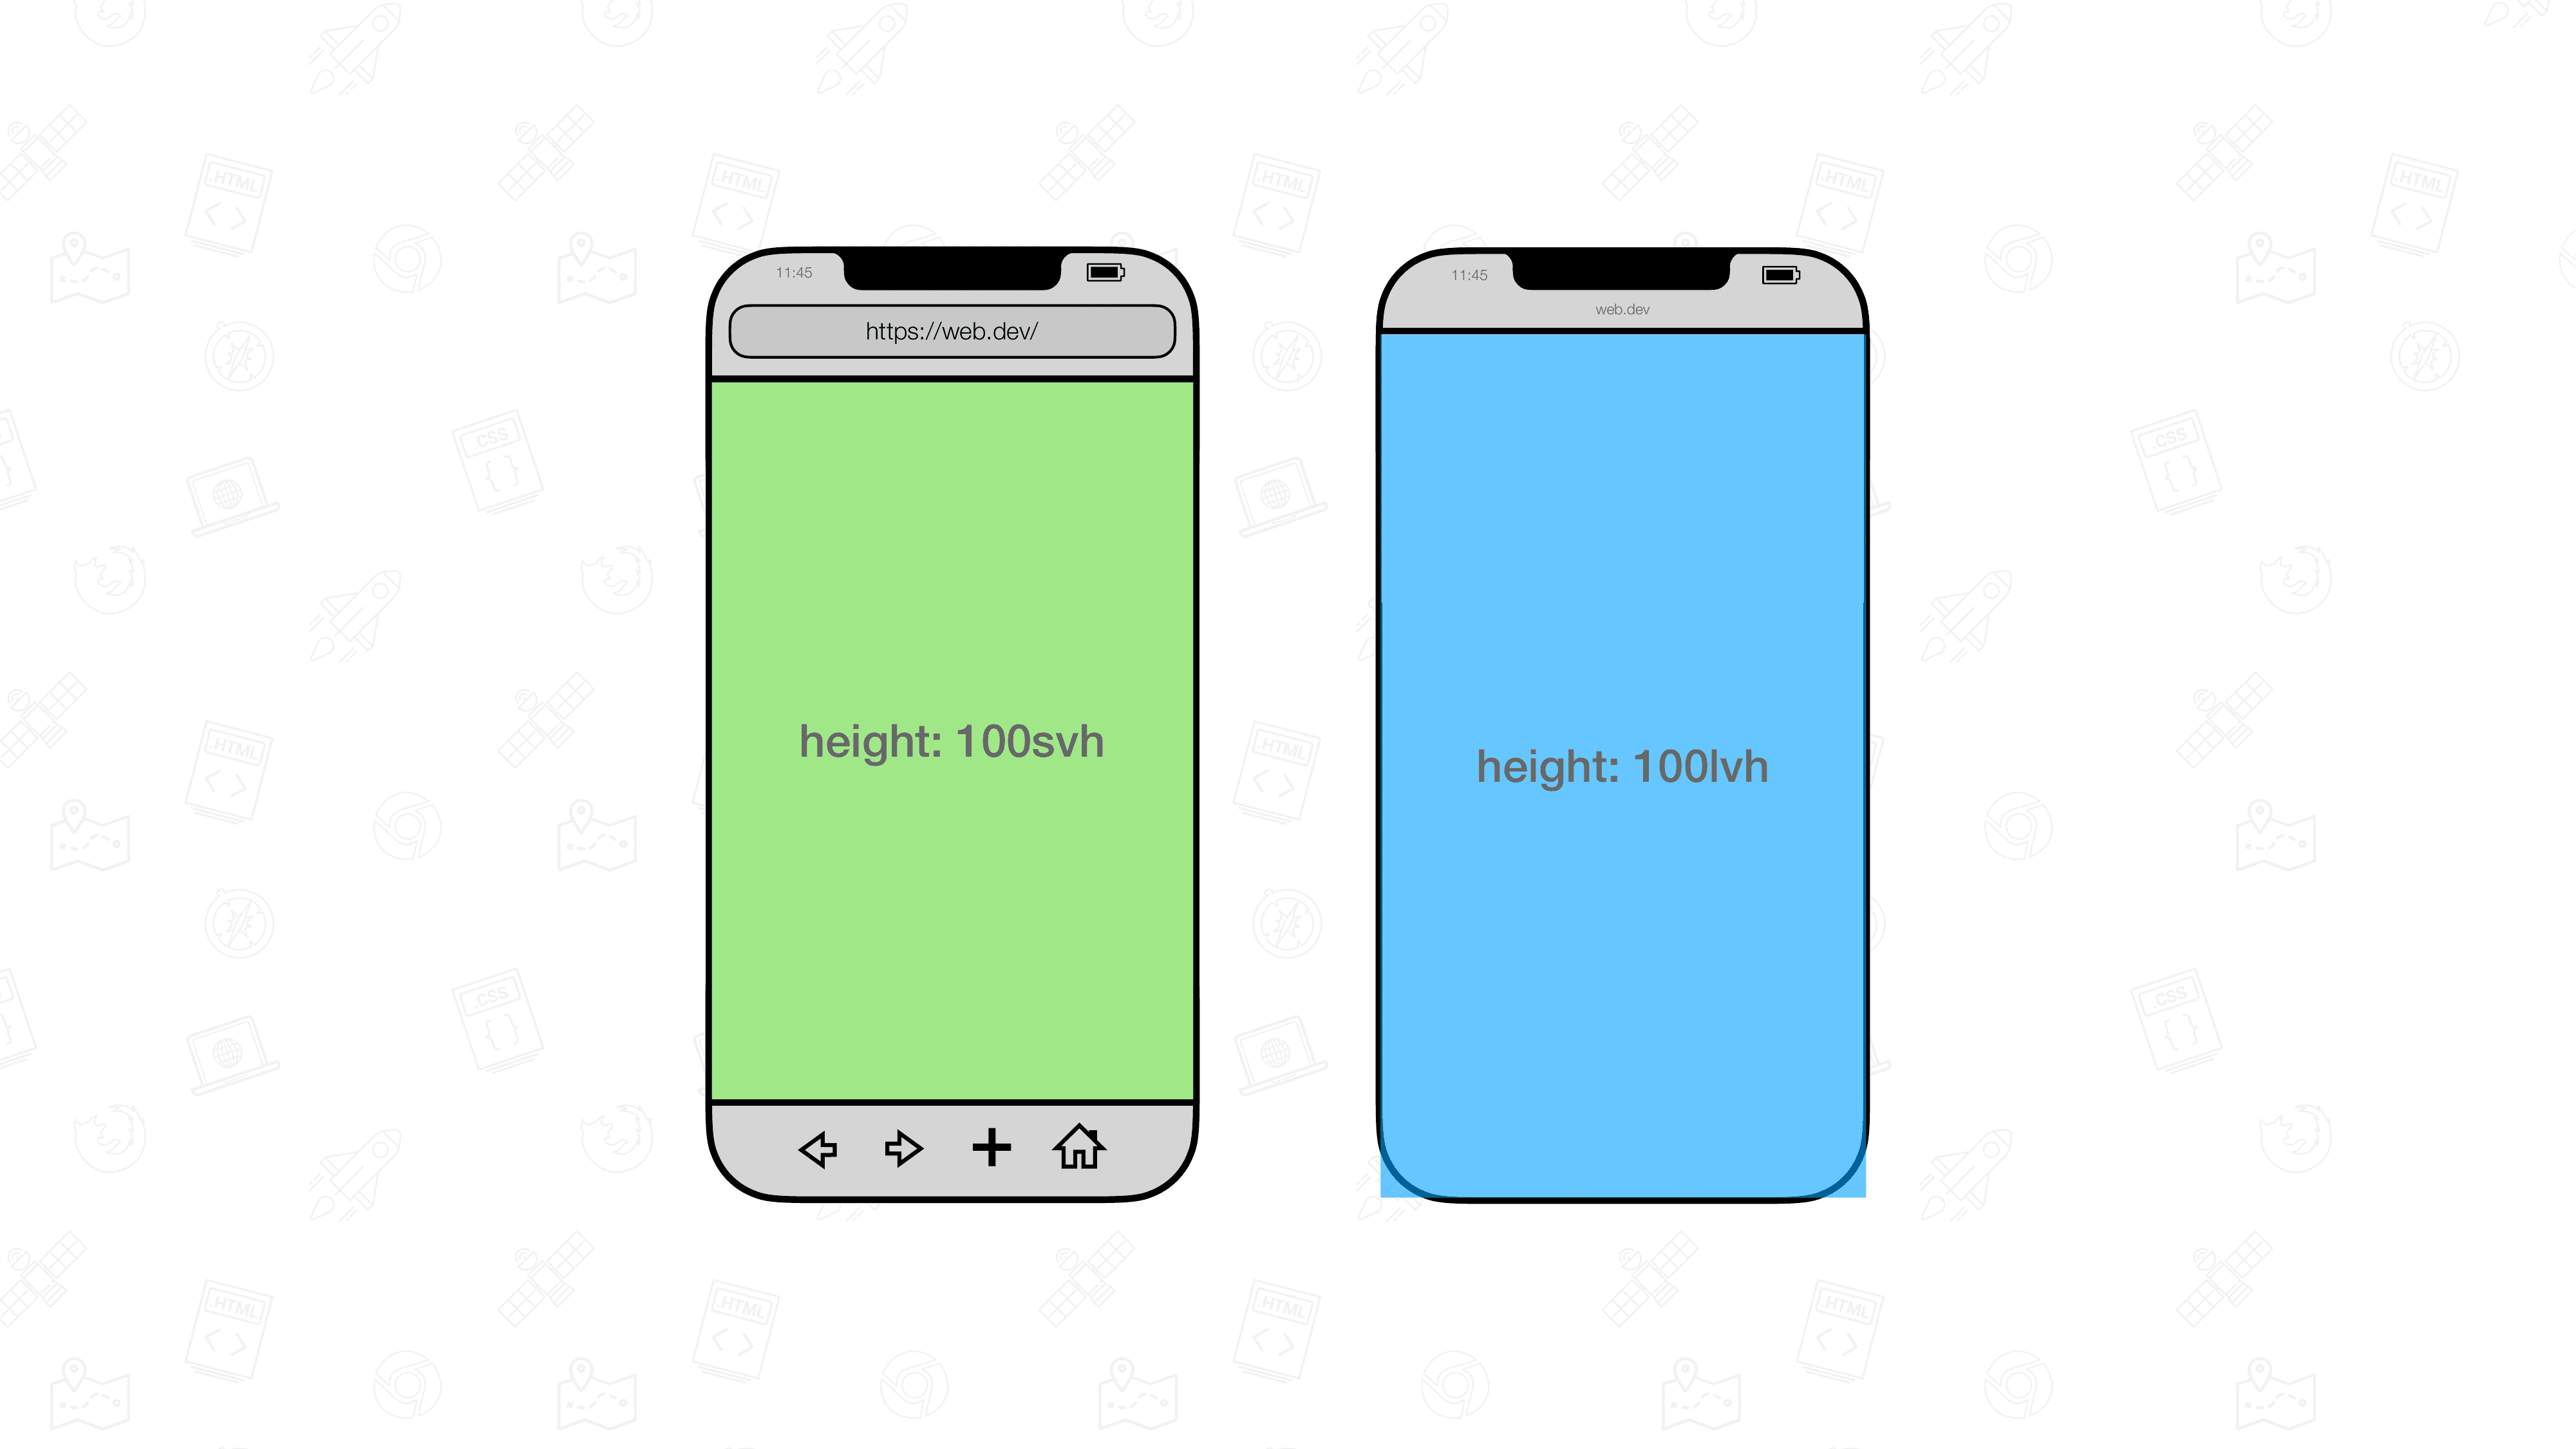 Две визуализации мобильного браузера, расположенные рядом друг с другом. У одного есть элемент размером 100svh, а у другого — 100lvh.